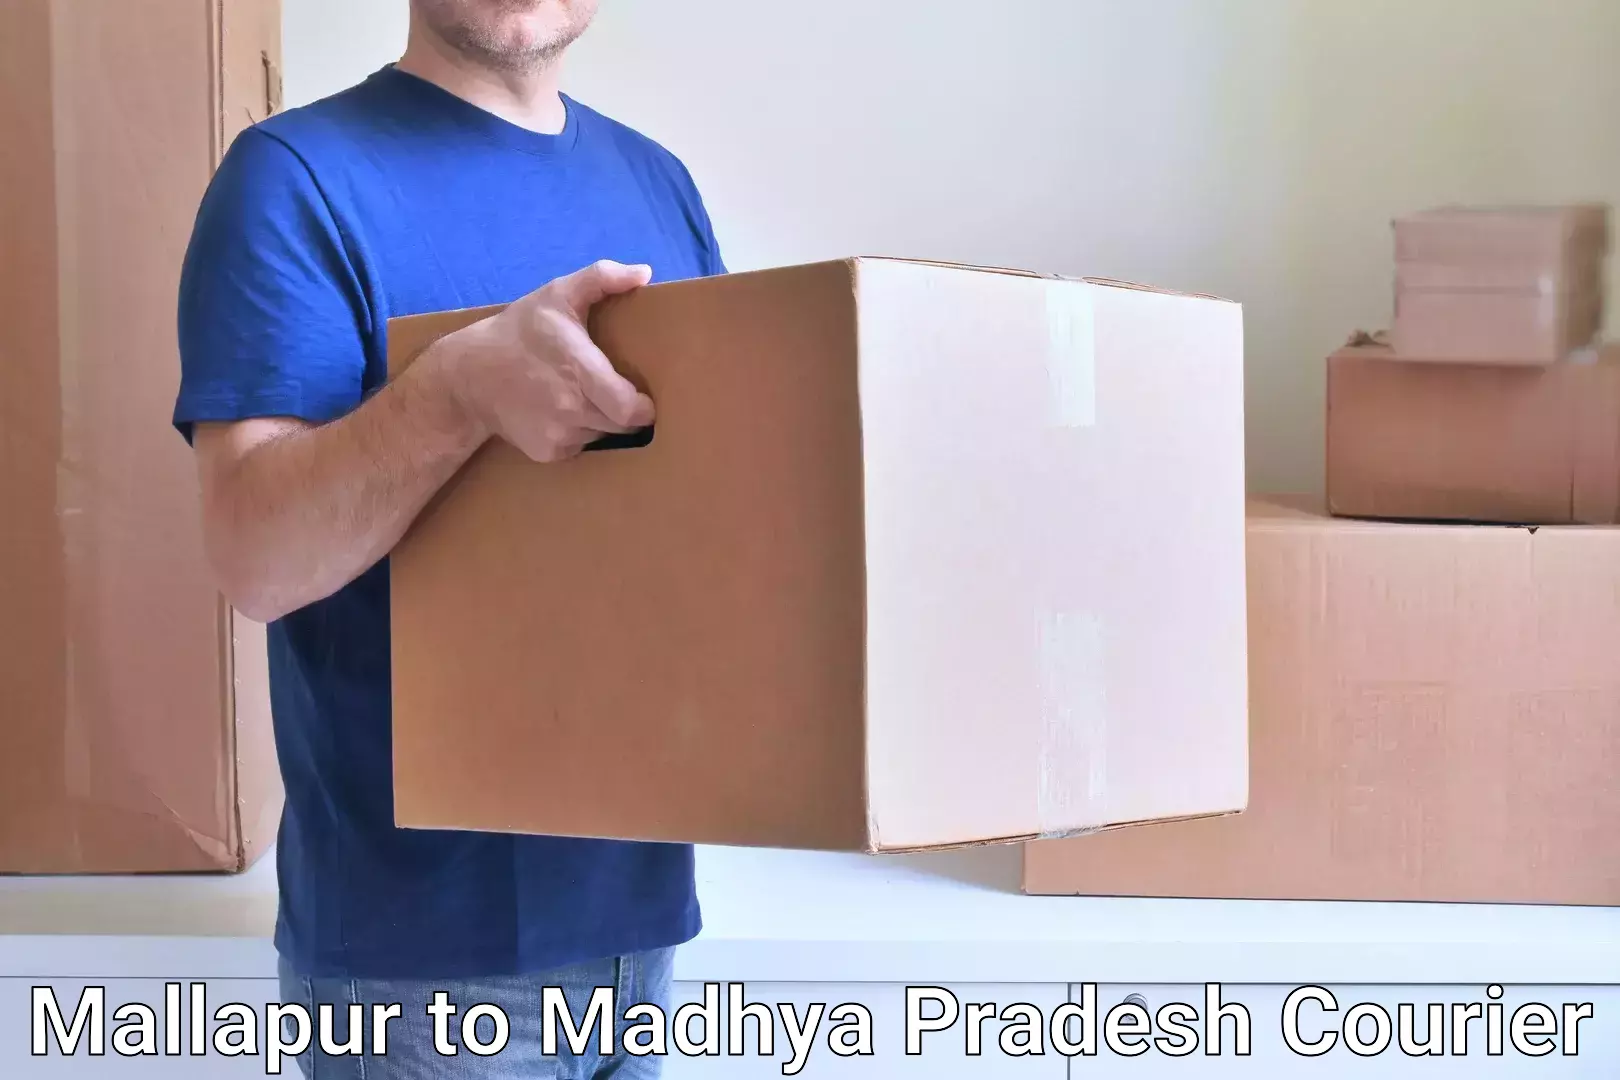 Professional parcel services Mallapur to Shajapur